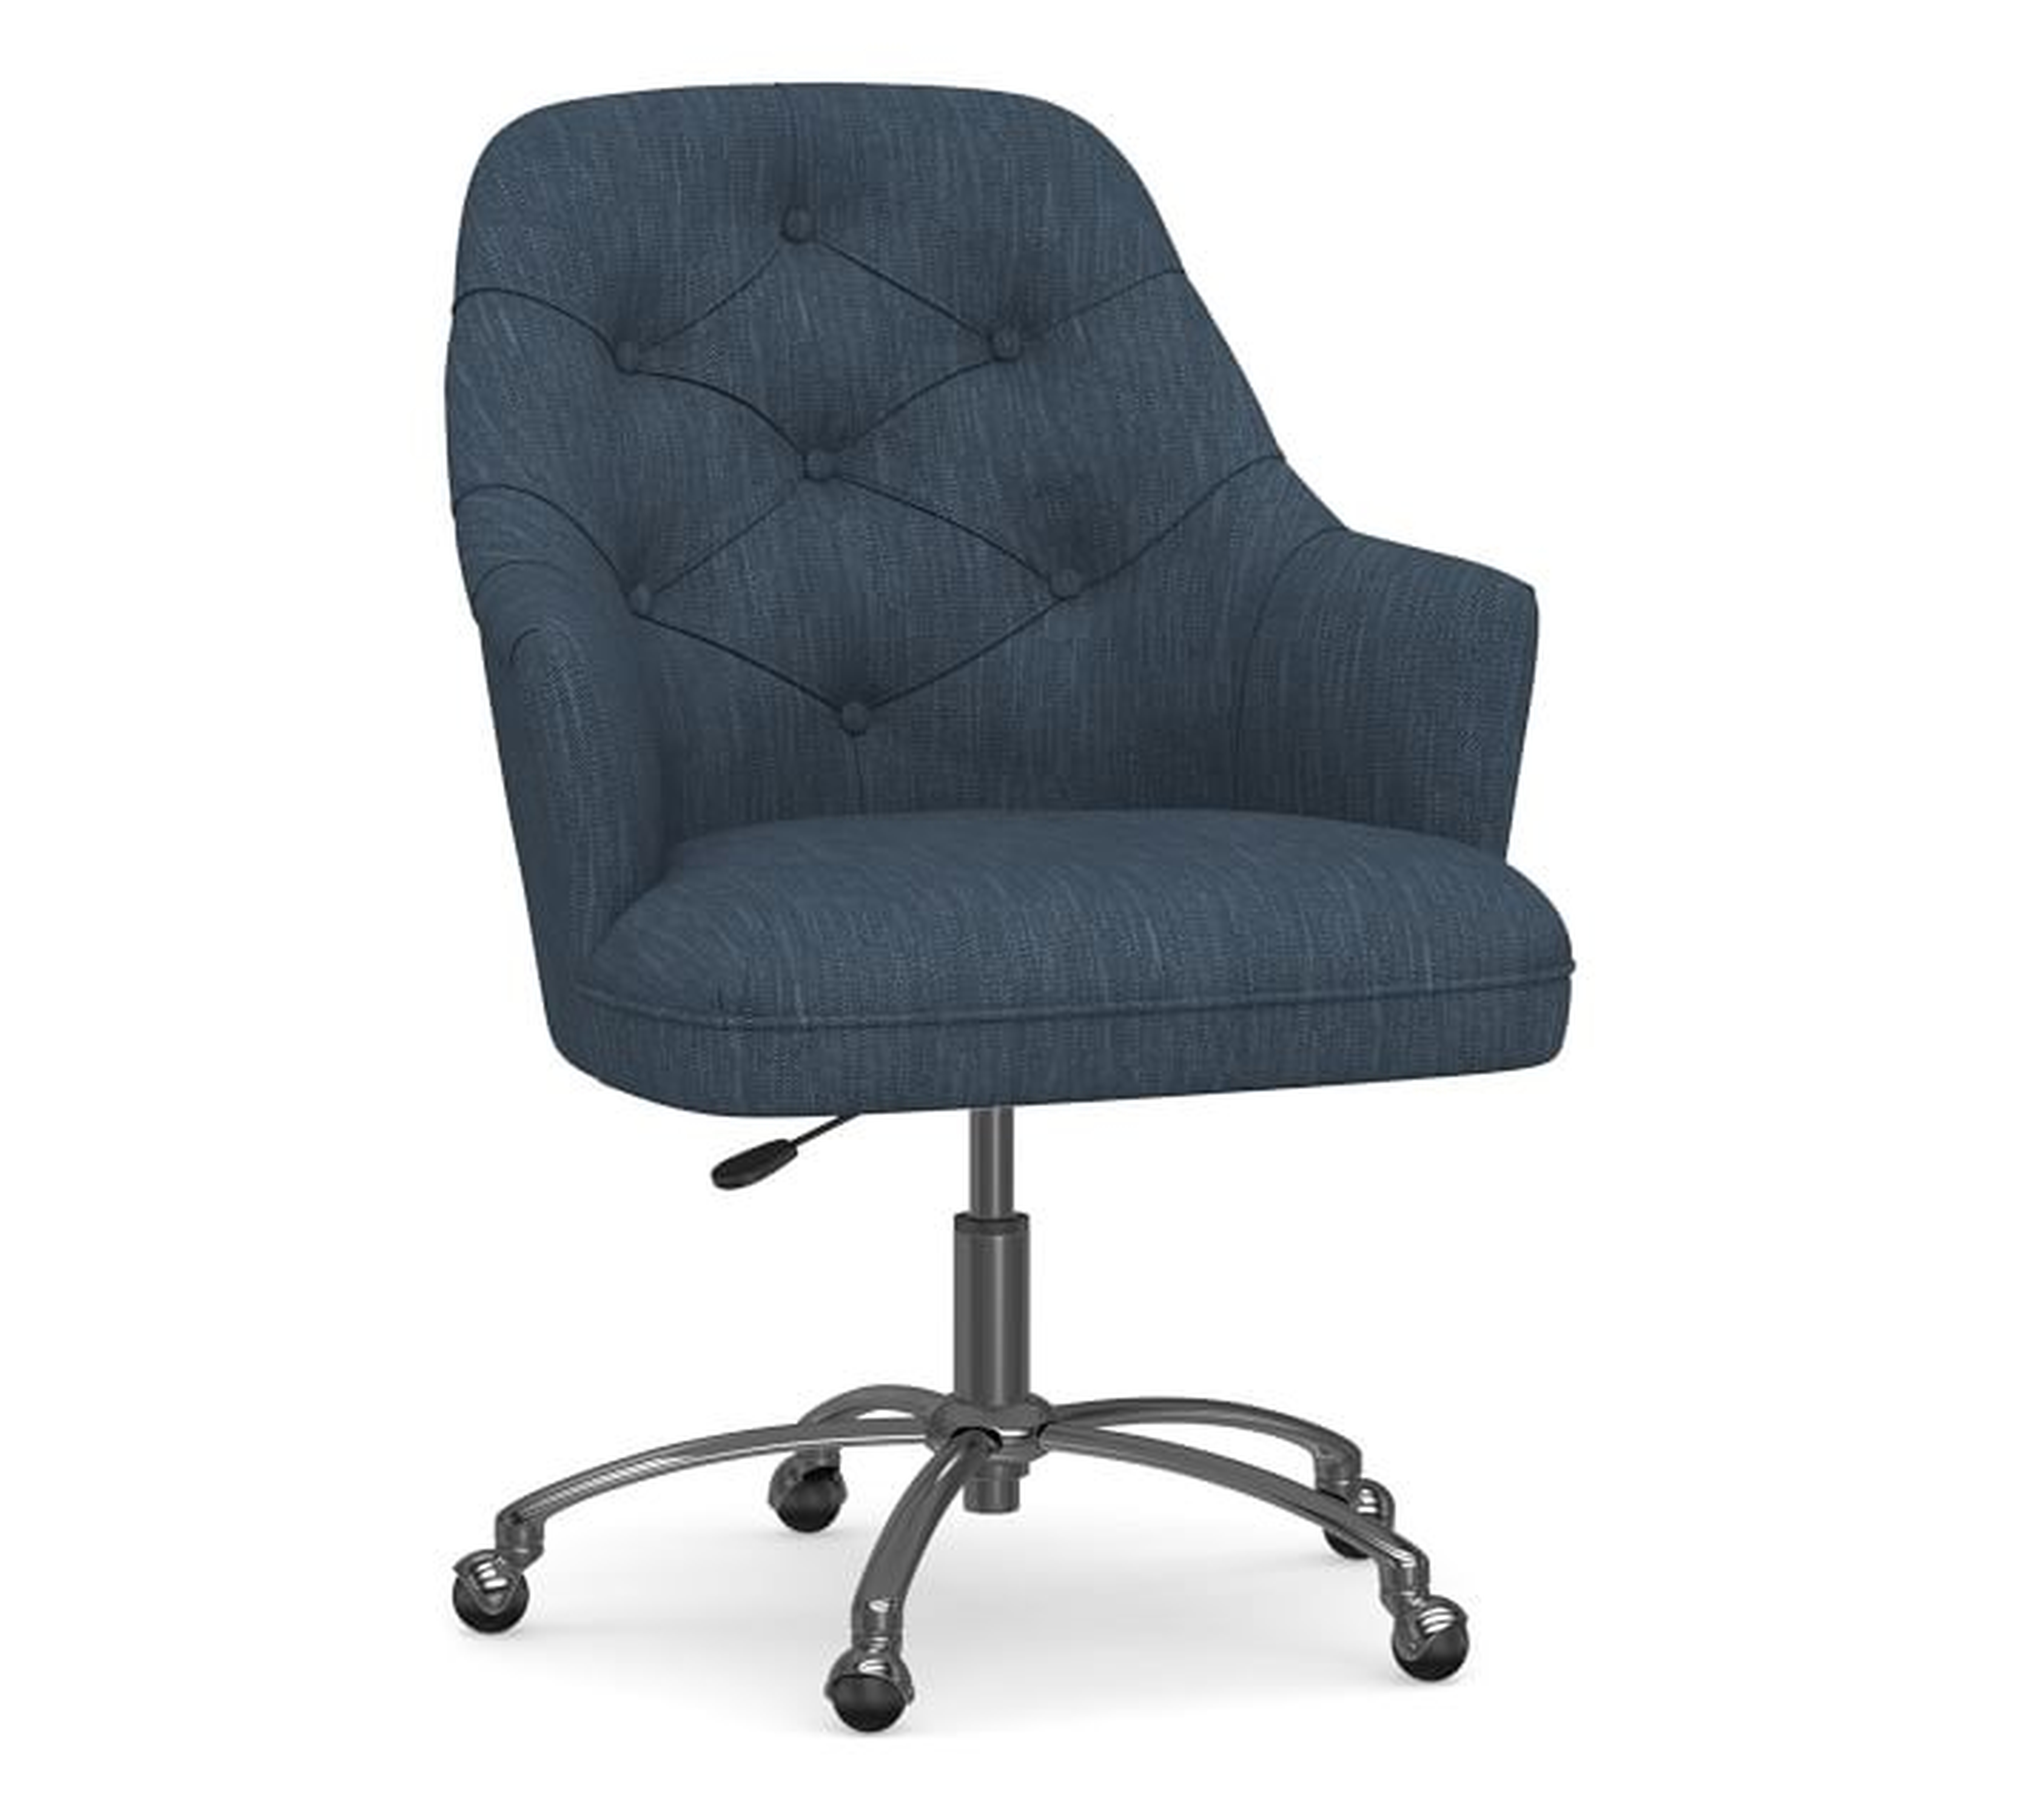 Everett Upholstered Desk Chair, Polished Nickel Swivel Base, Brushed Crossweave Navy - Pottery Barn